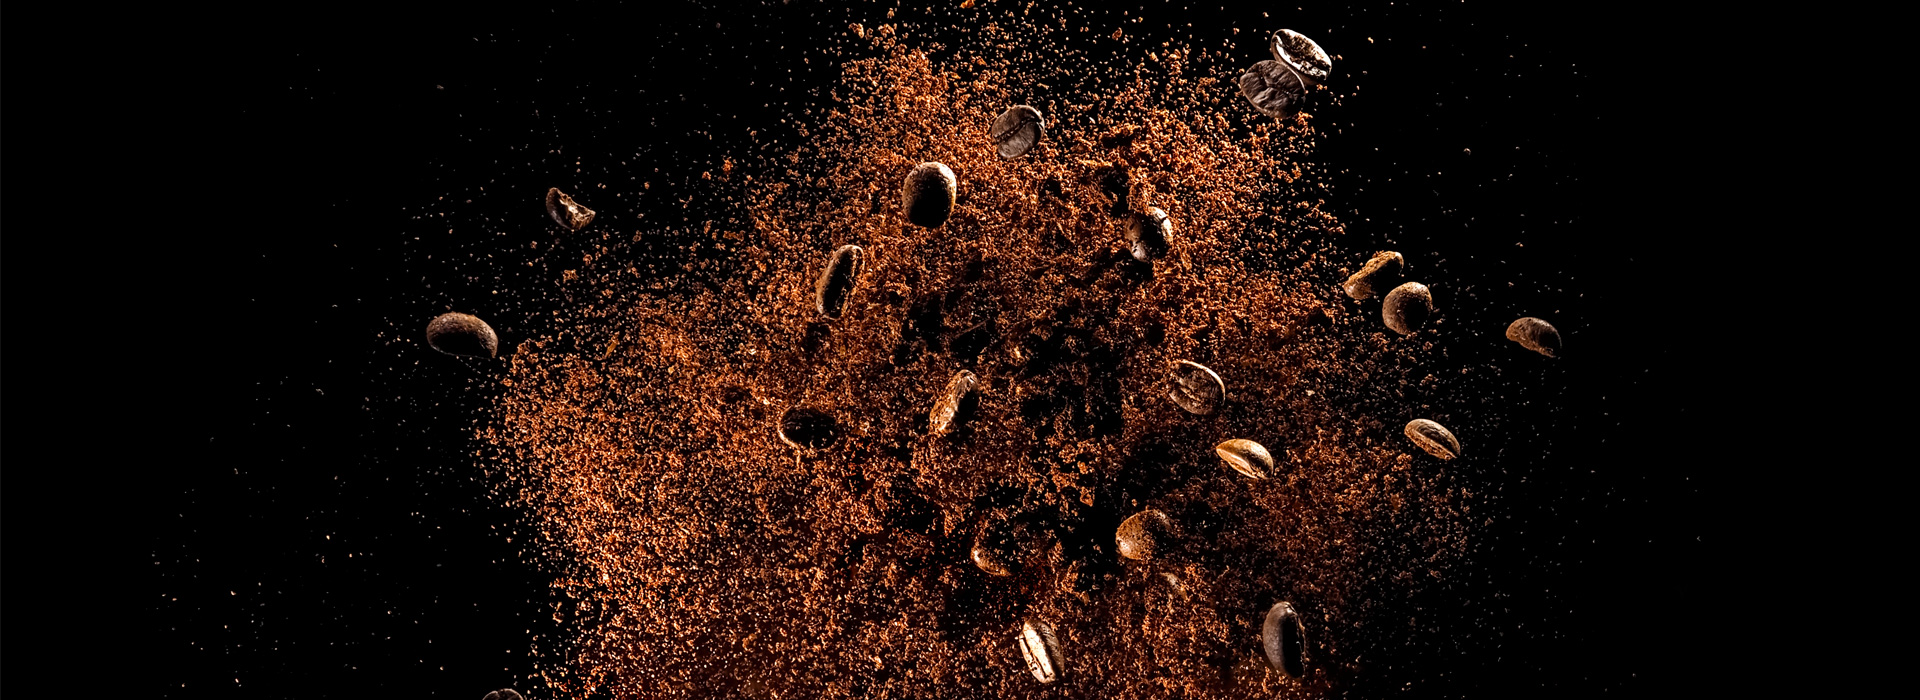 Зерно или молотый кофе на ваш выбор